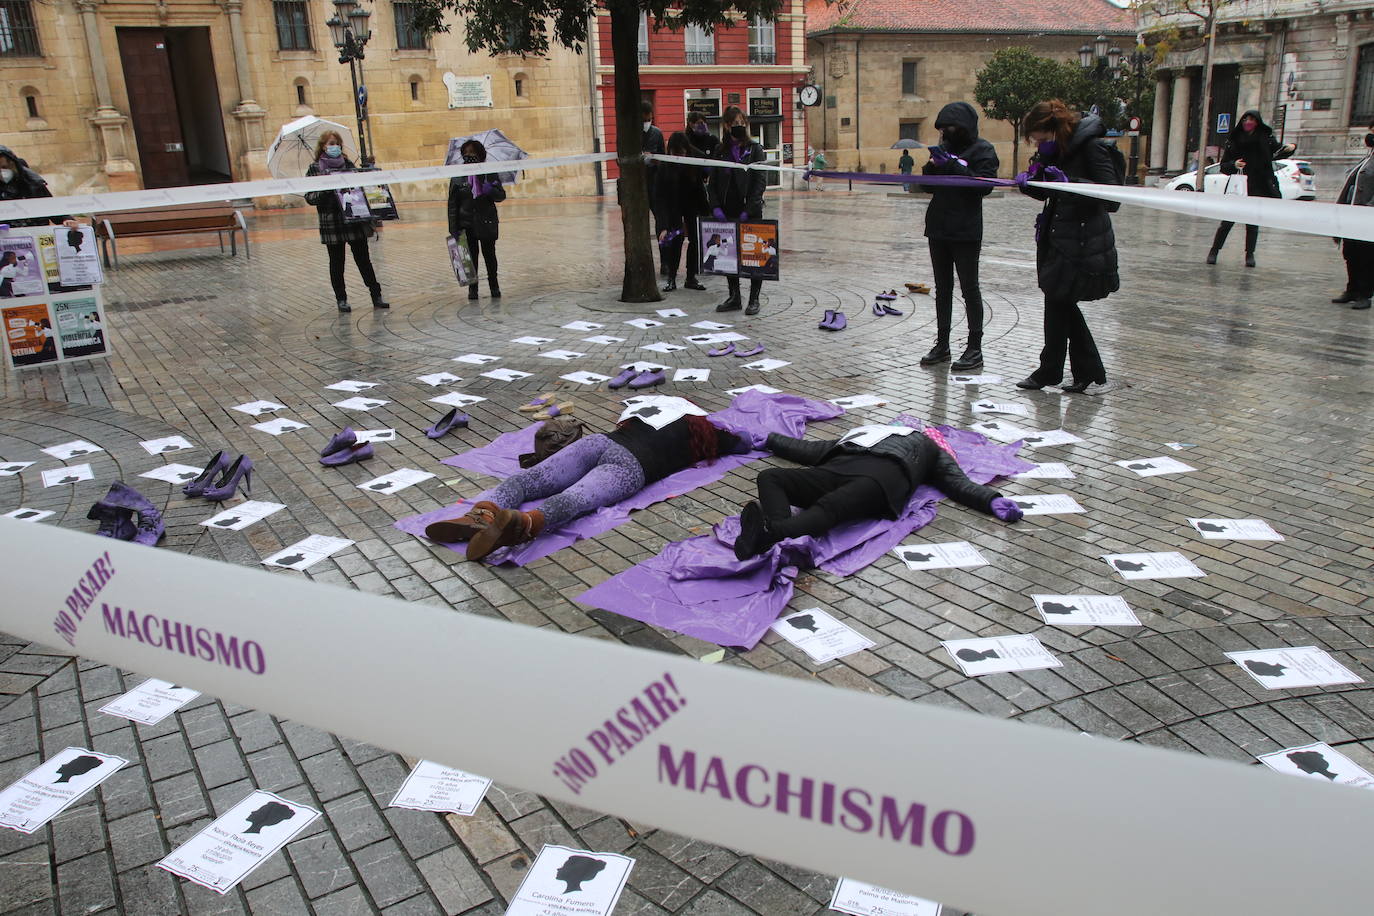 Las calles de Asturias se han teñido de morado este miércoles, 25N, para reivindicar el fin de la violencia contra la mujeres. Se han celebrado también minutos de silencio frente a los Ayuntamientos del Principado por las víctimas de violencia de género, en el día en que se conmemora el 'Día Internacional de la Eliminación de la Violencia contra las Mujeres'. Así, por ejemplo, las manifestantes de Gijón portaban carteles con el lema «Un patriarcado, mil violencias», o el Consejo Municipal de la Mujer de San Martín del Rey Auerlio ha salido a la calle con una pancarta en la que se podía leer «Sin igualdad no hay libertad» 